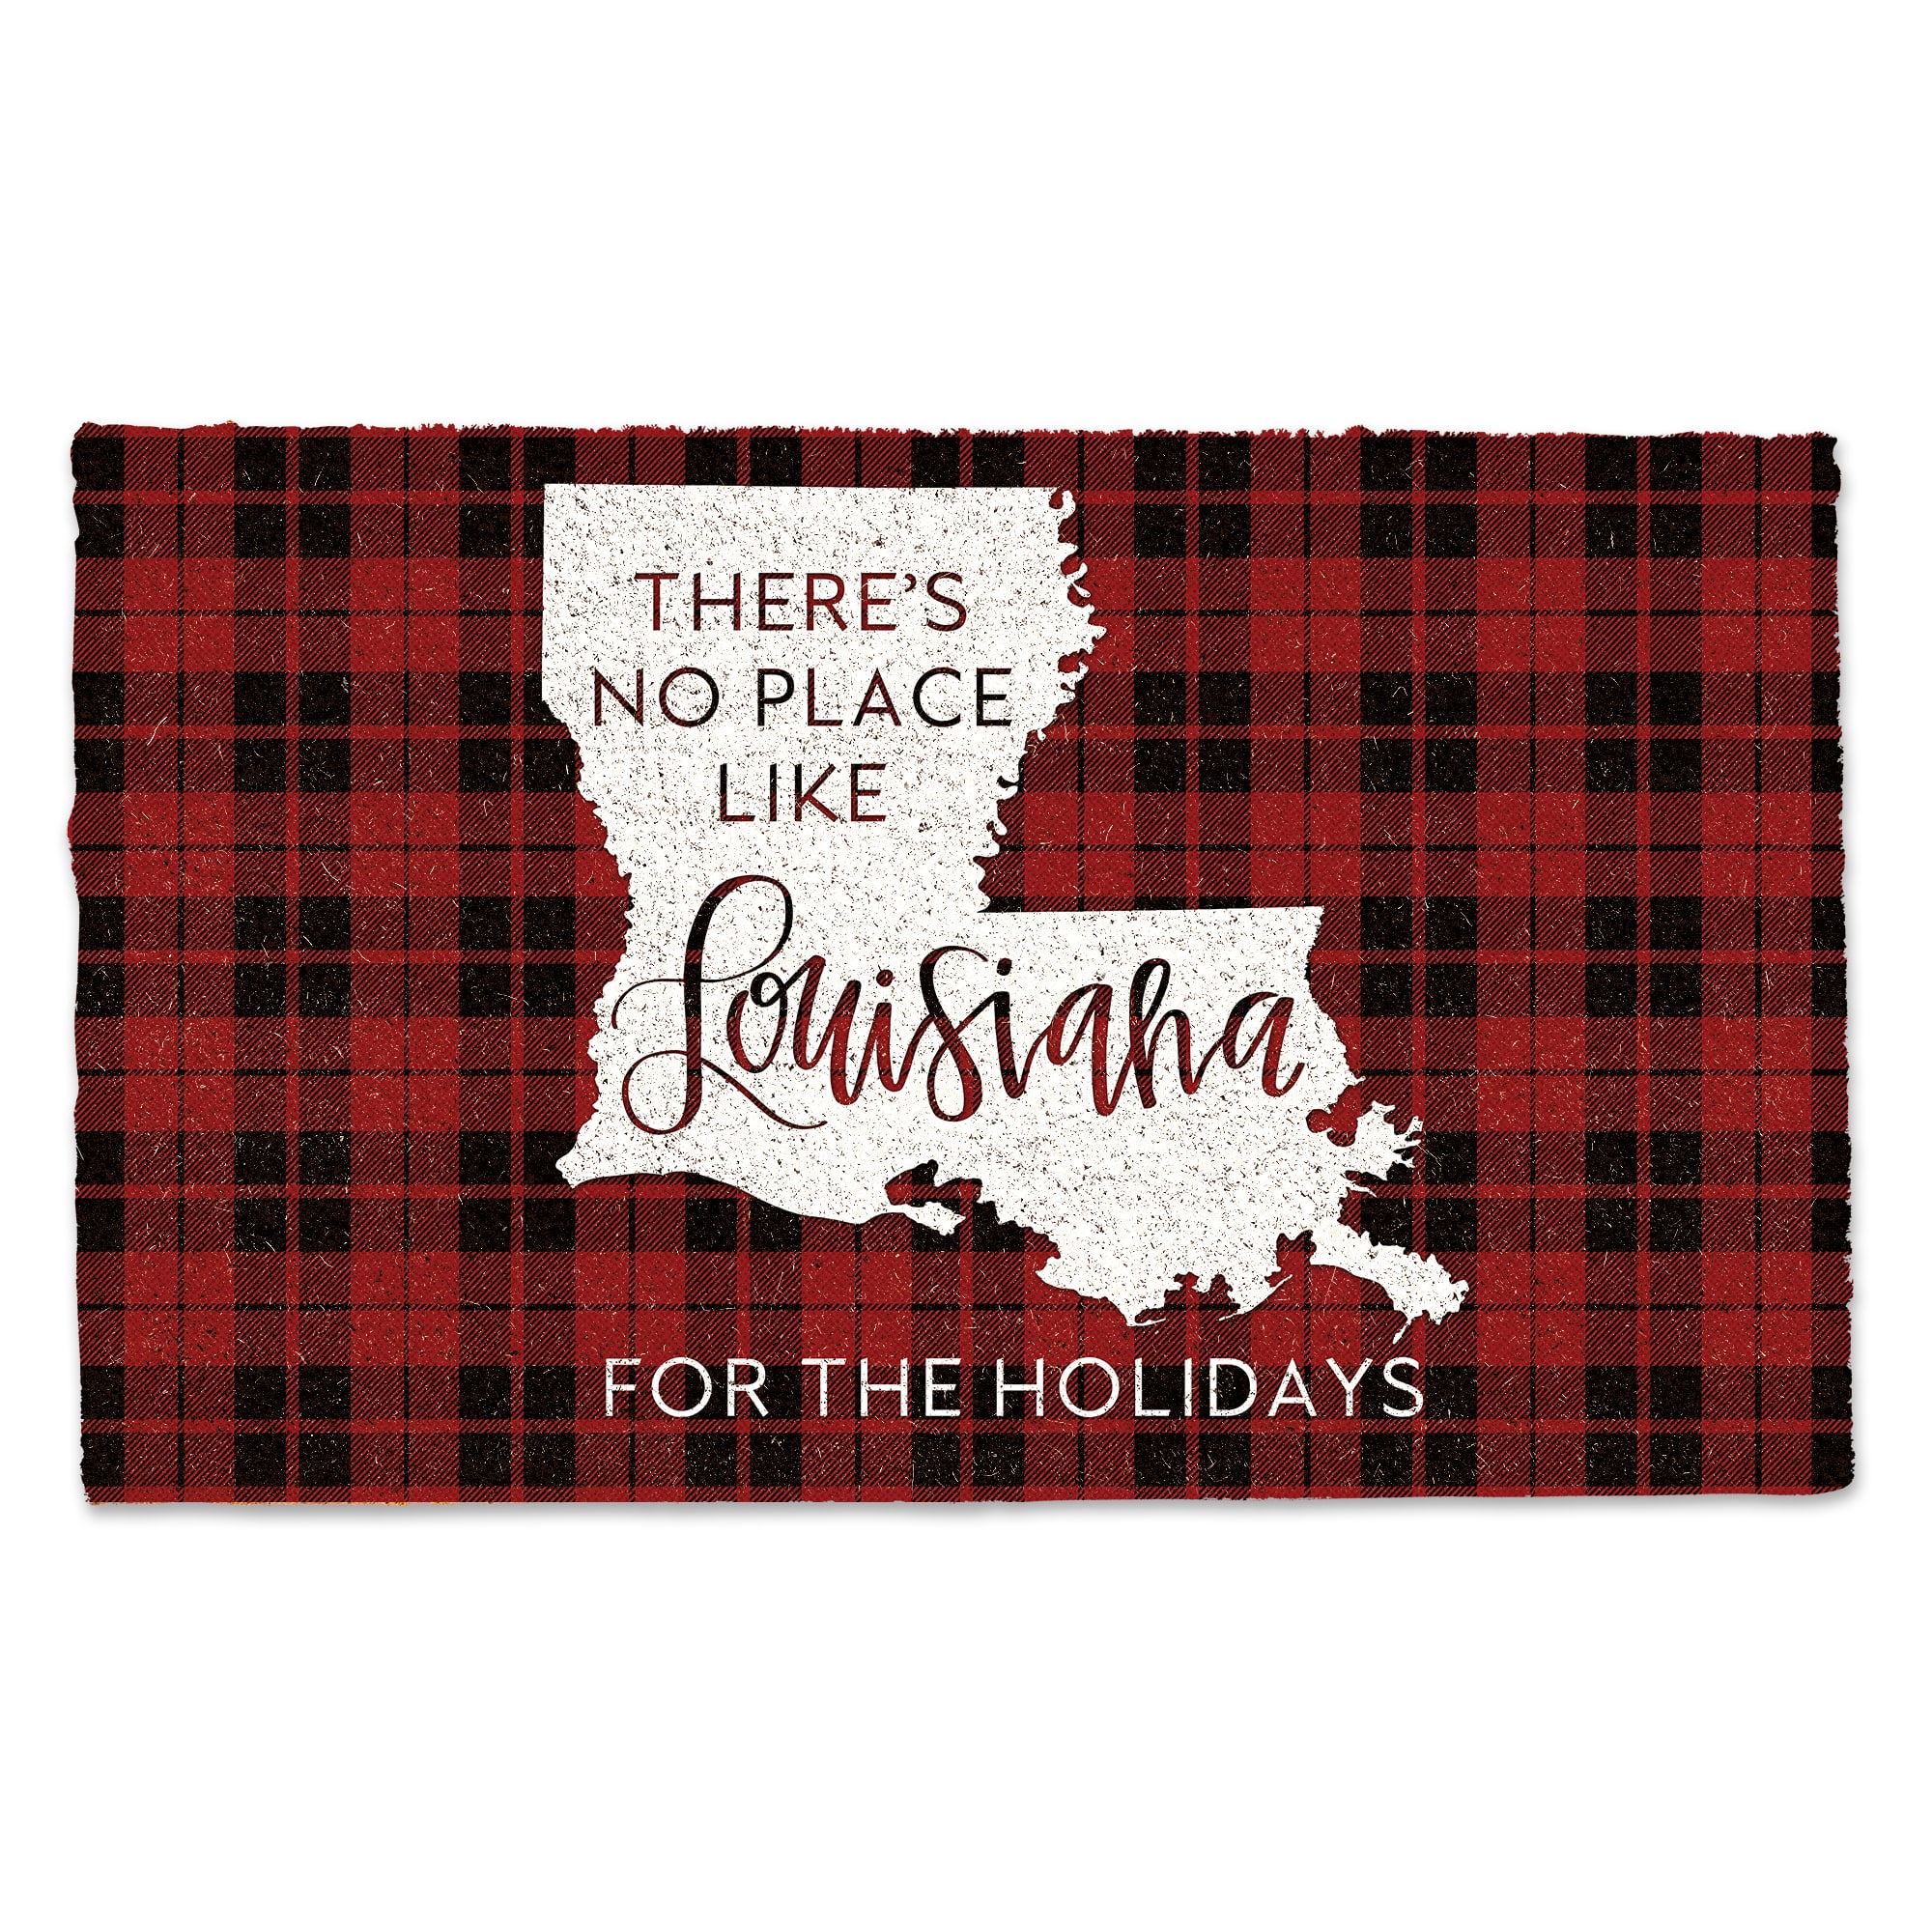 Louisiana For the Holidays Doormat